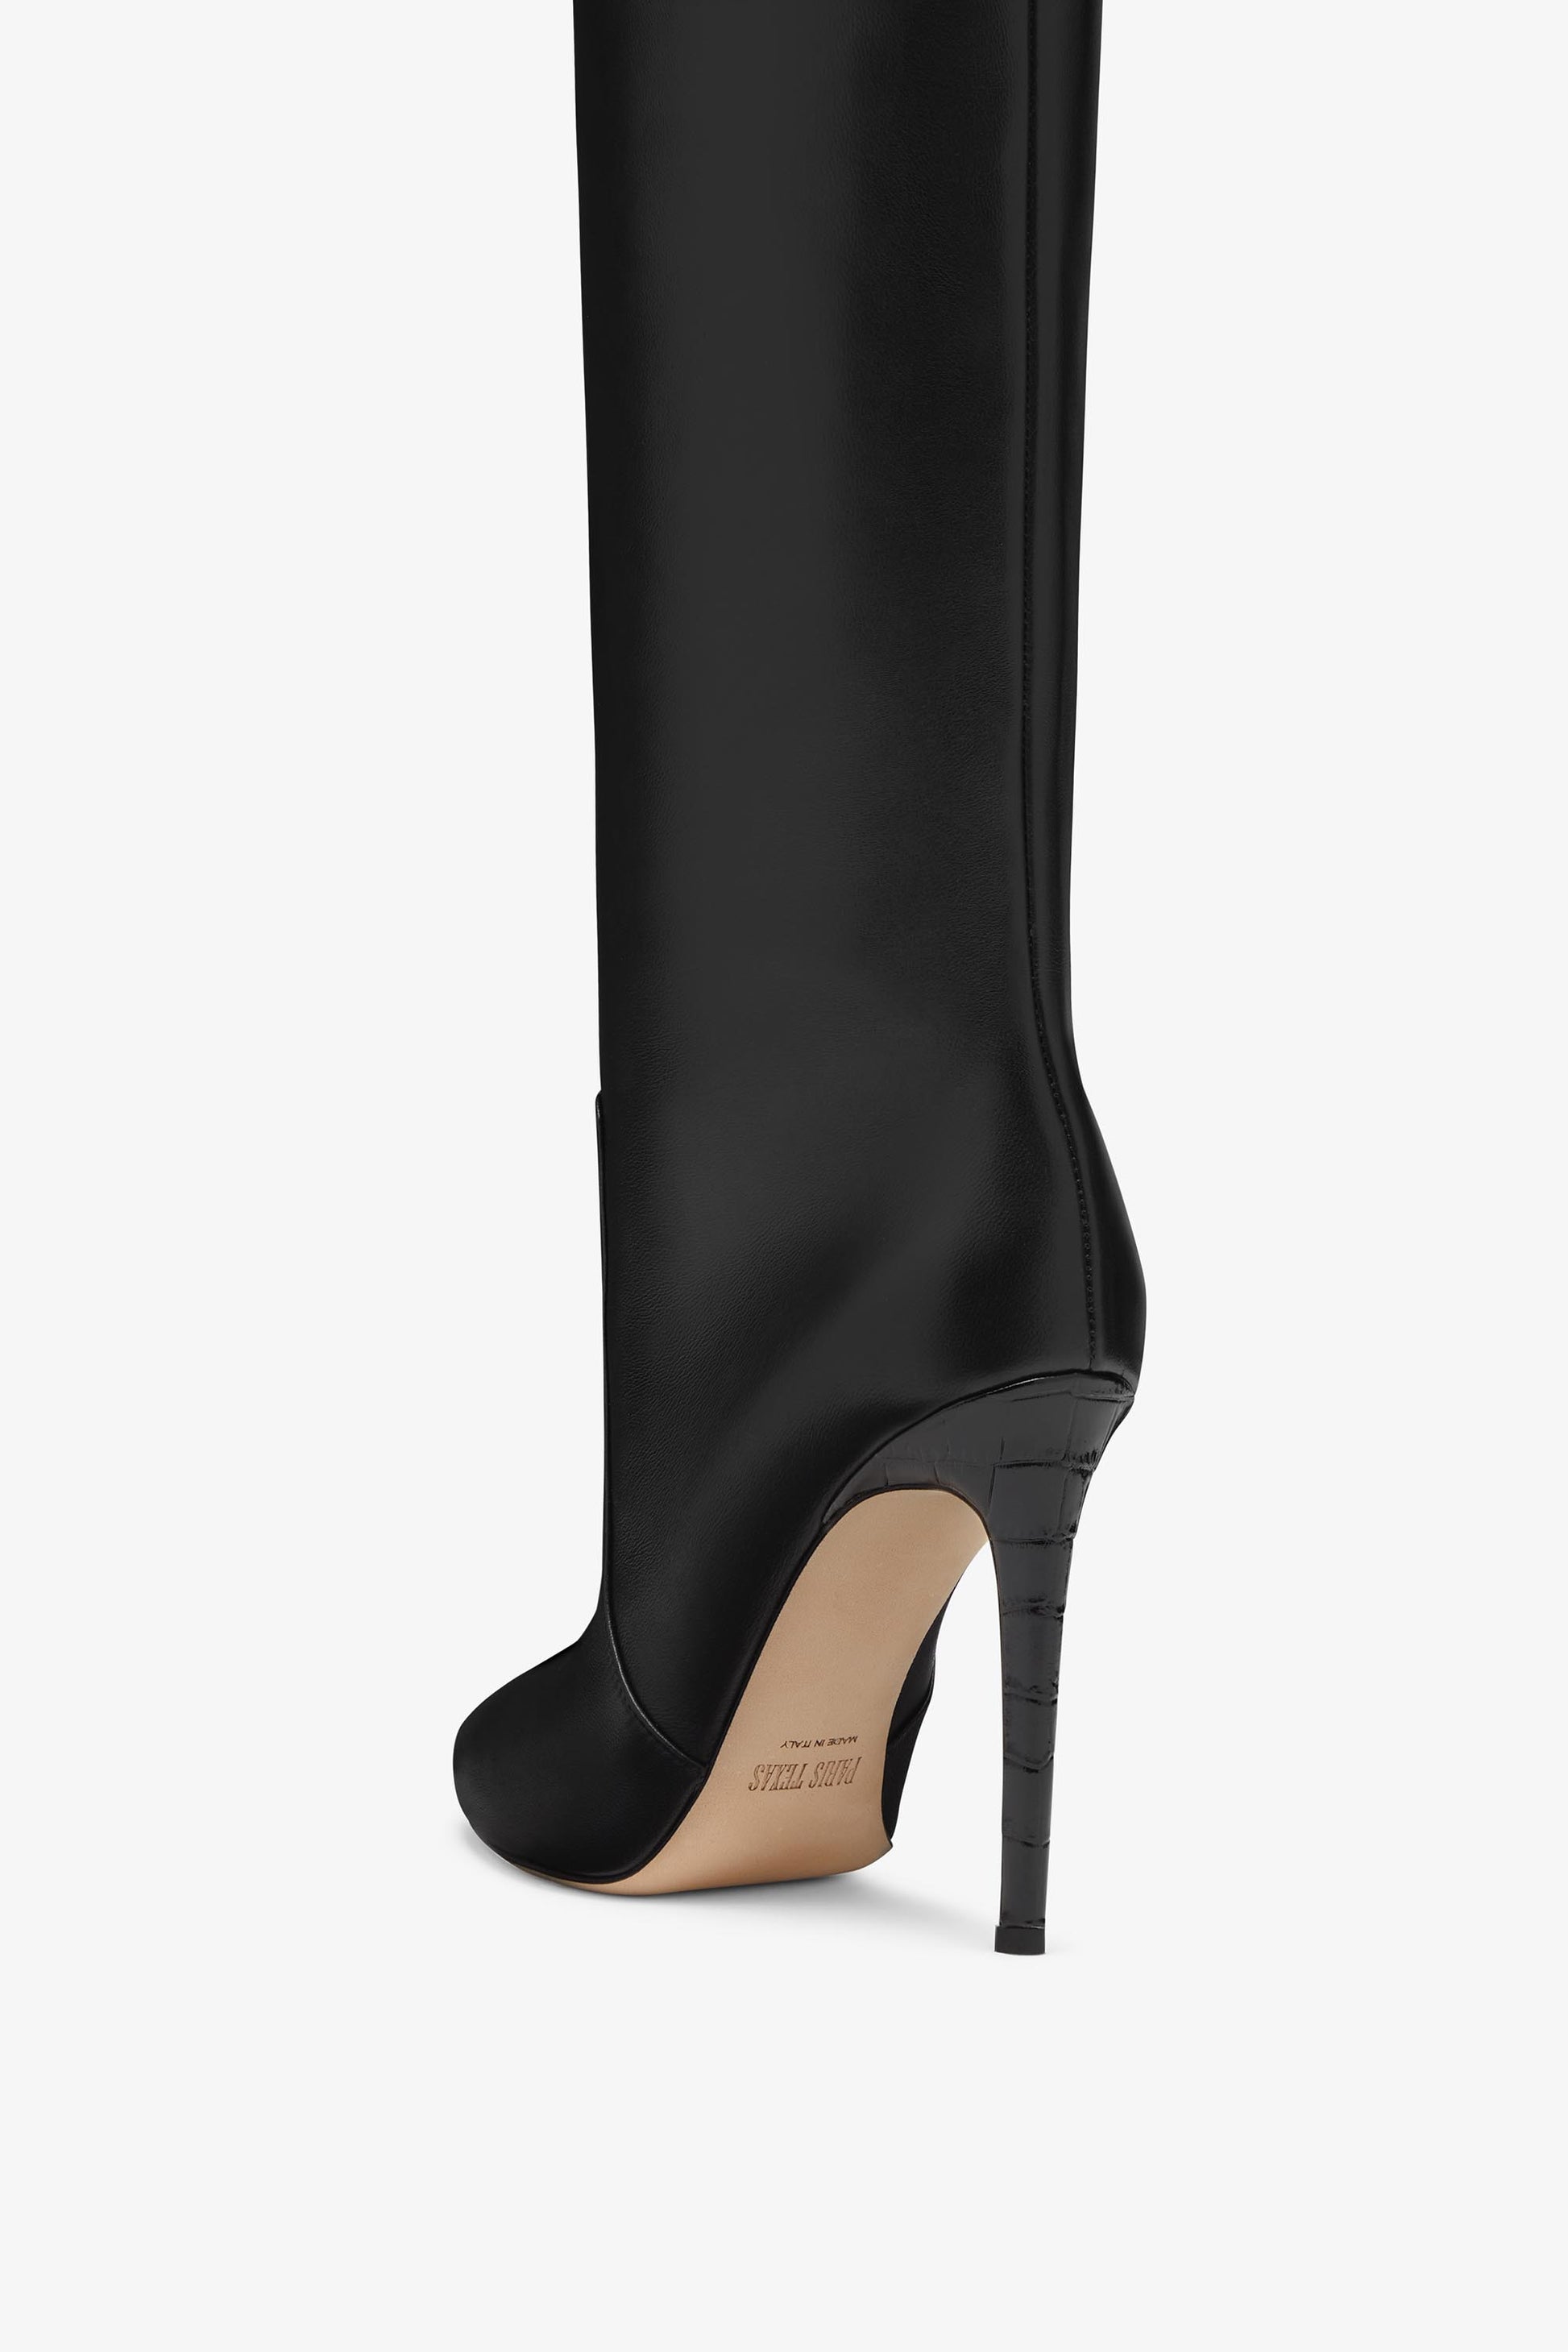 Black nappa leather stiletto boots